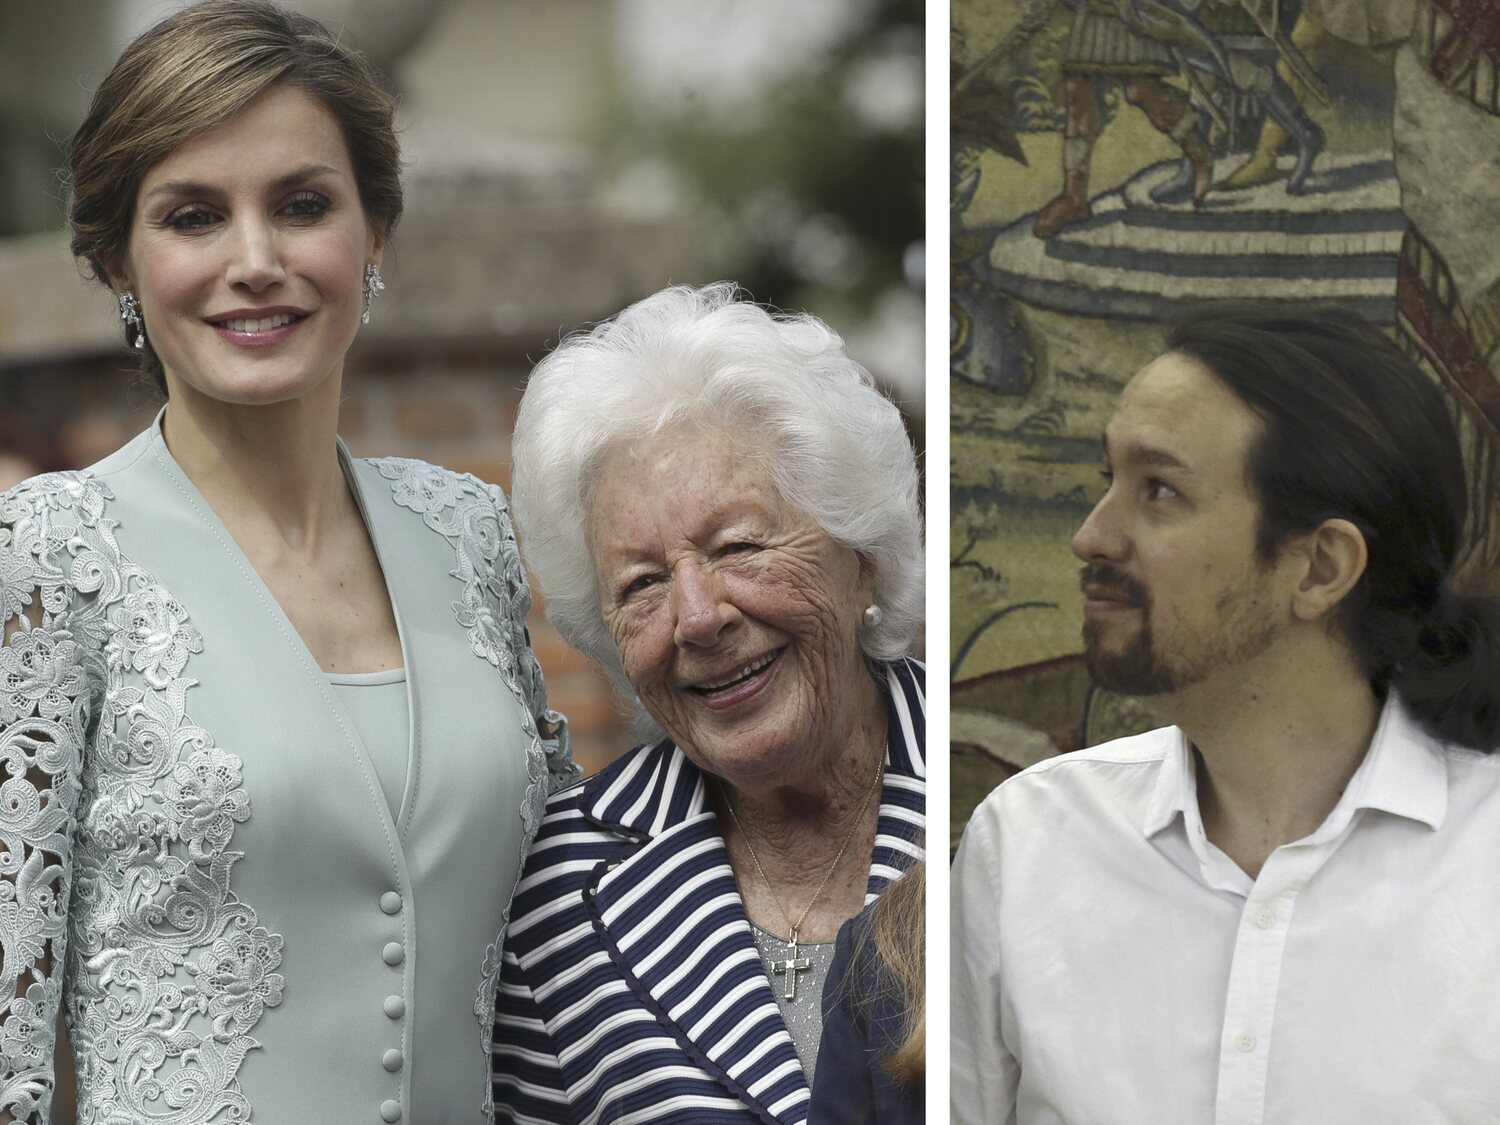 La abuela de la reina Letizia: "Le espeté a Felipe: ¿Por qué recibiste al gilipollas del 'Coletas' si iba en mangas de camisa?"